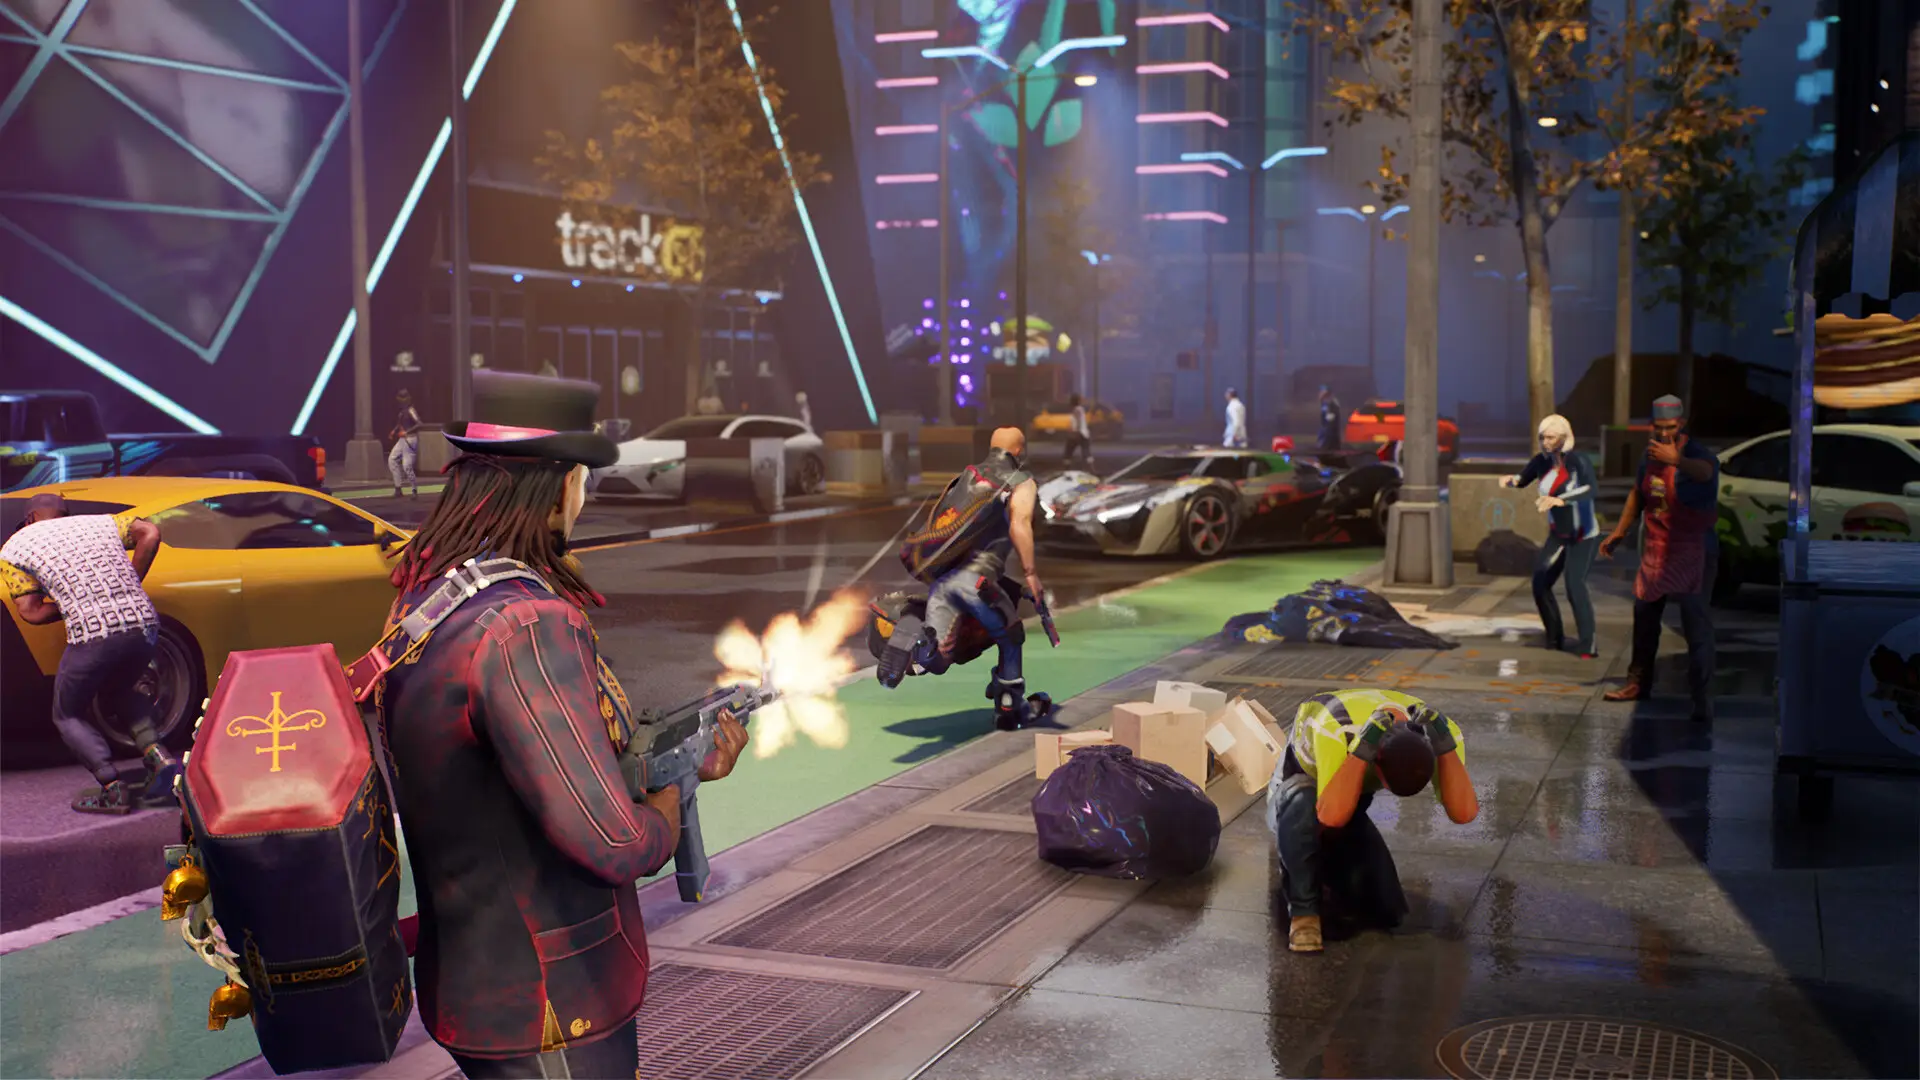 La imagen muestra un personaje de un videojuego armado luchando contra otros personajes armados en una calle concurrida.